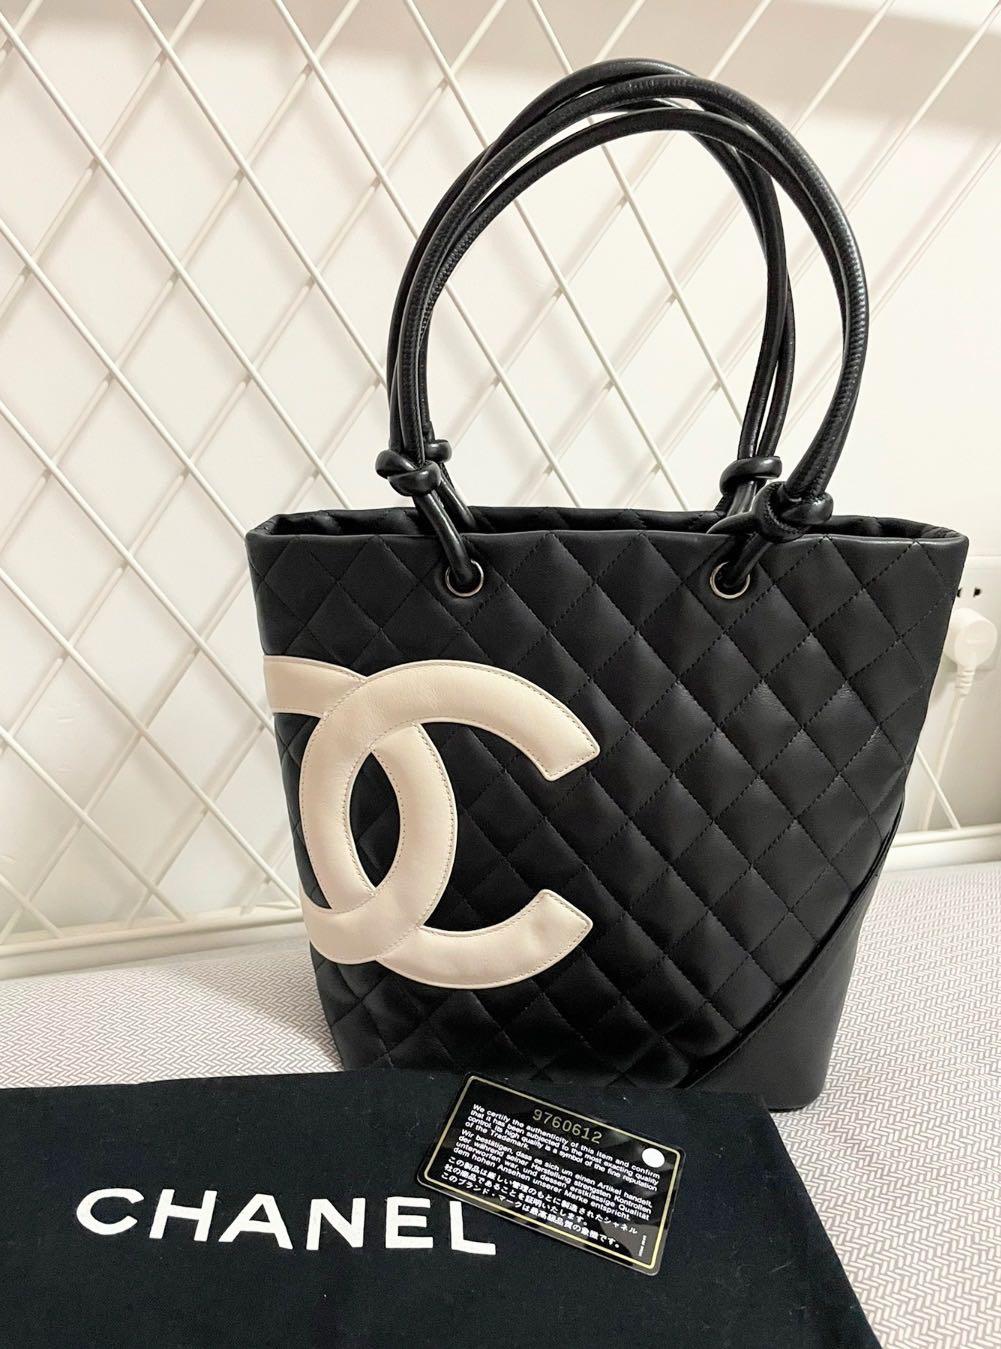 Chanel Cambon Tote (Est Retail Price $4900)